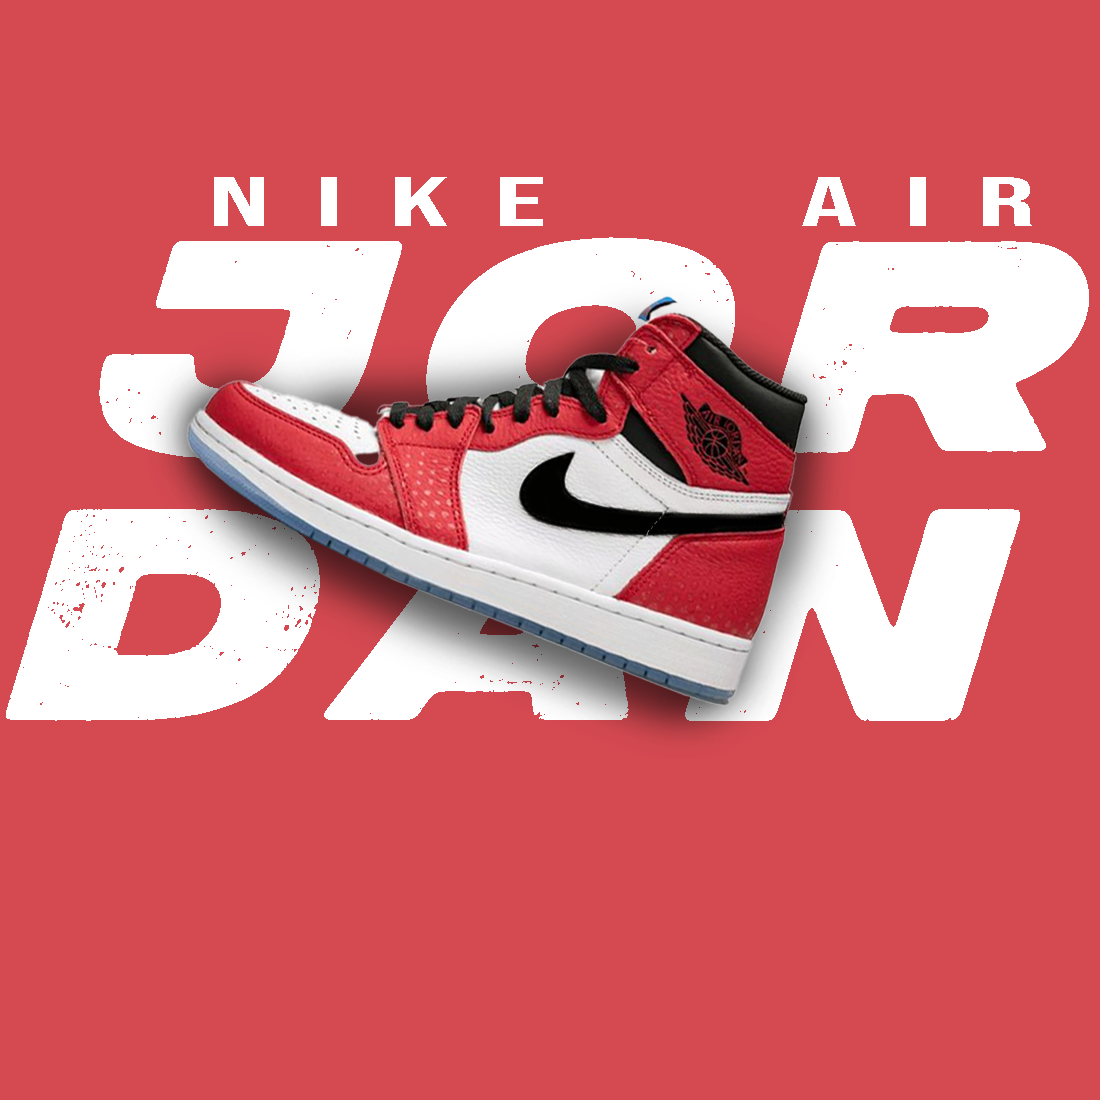 Nike Air Jordan 1 poster cover image.